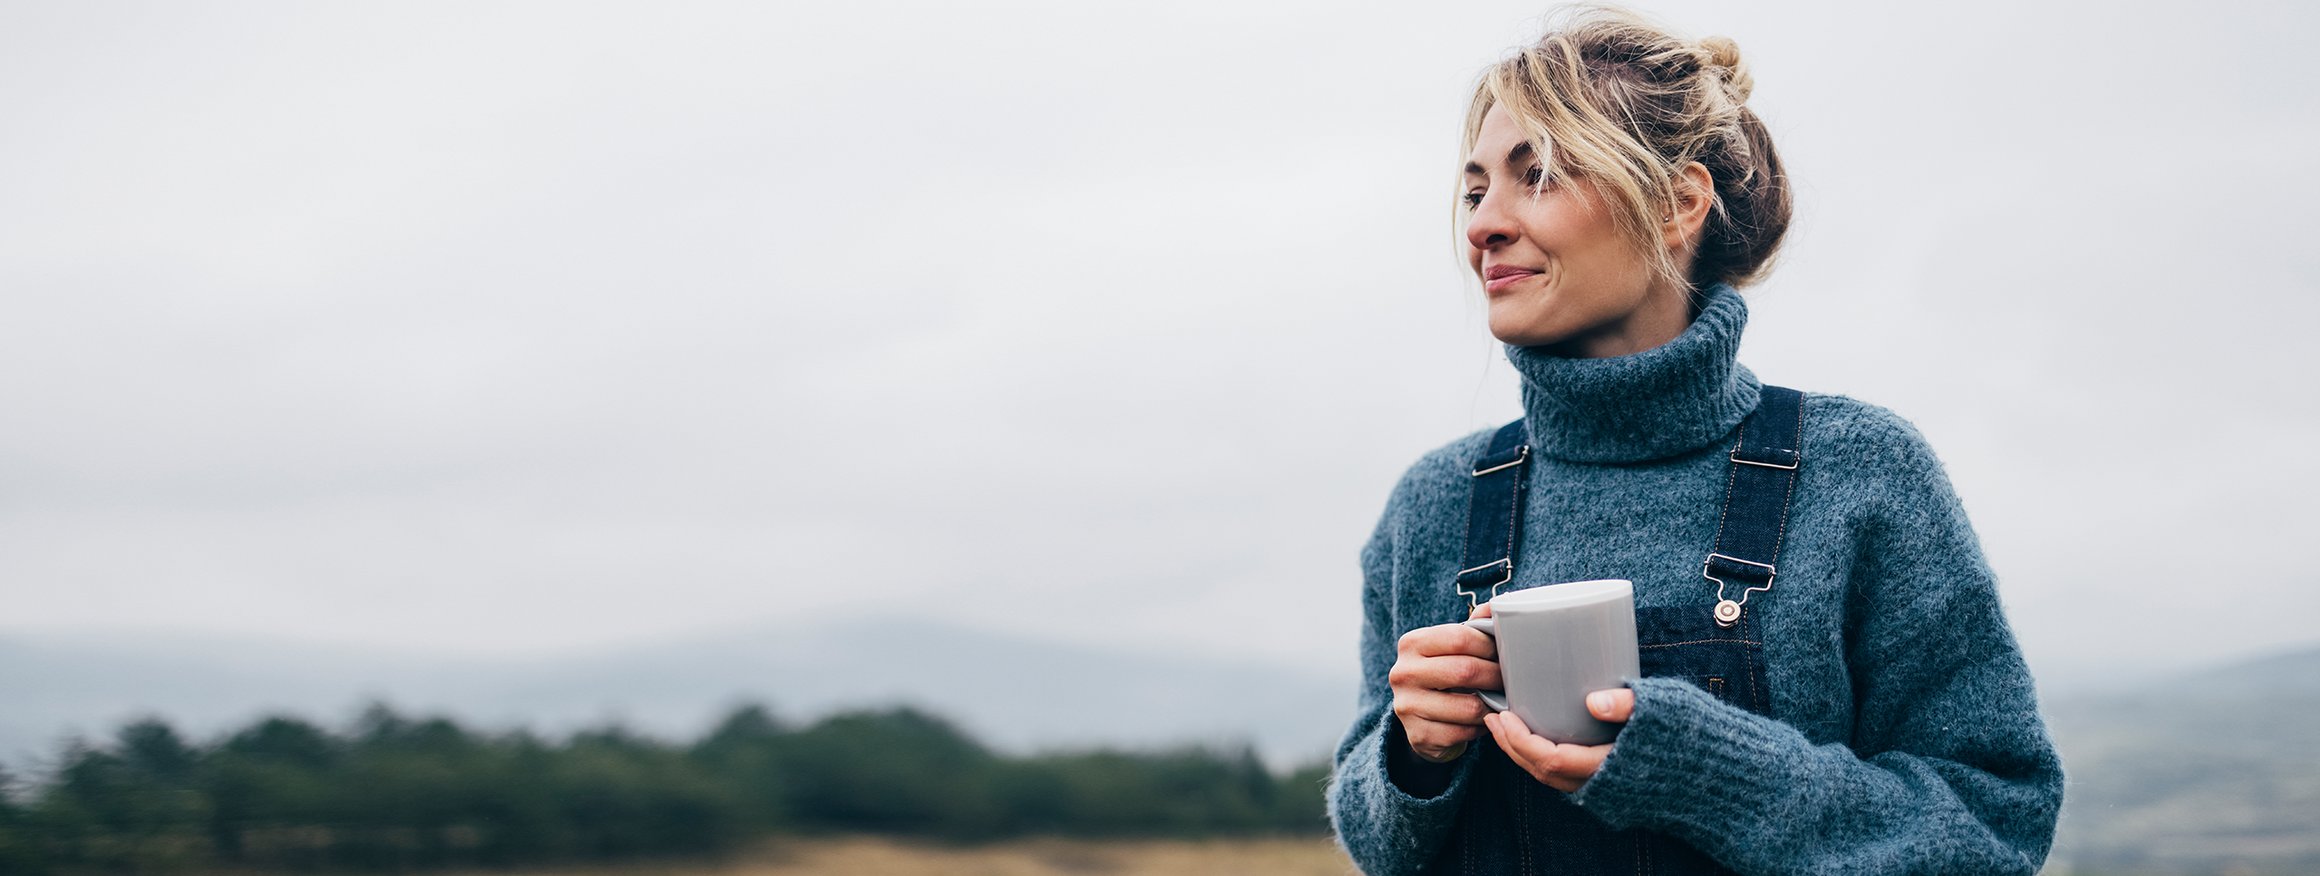 Eine blonde Frau mit hochgesteckten Haaren trägt einen Pullover und eine Latzhose. In der Hand hält sie eine Tasse Tee und lächelt sanft.